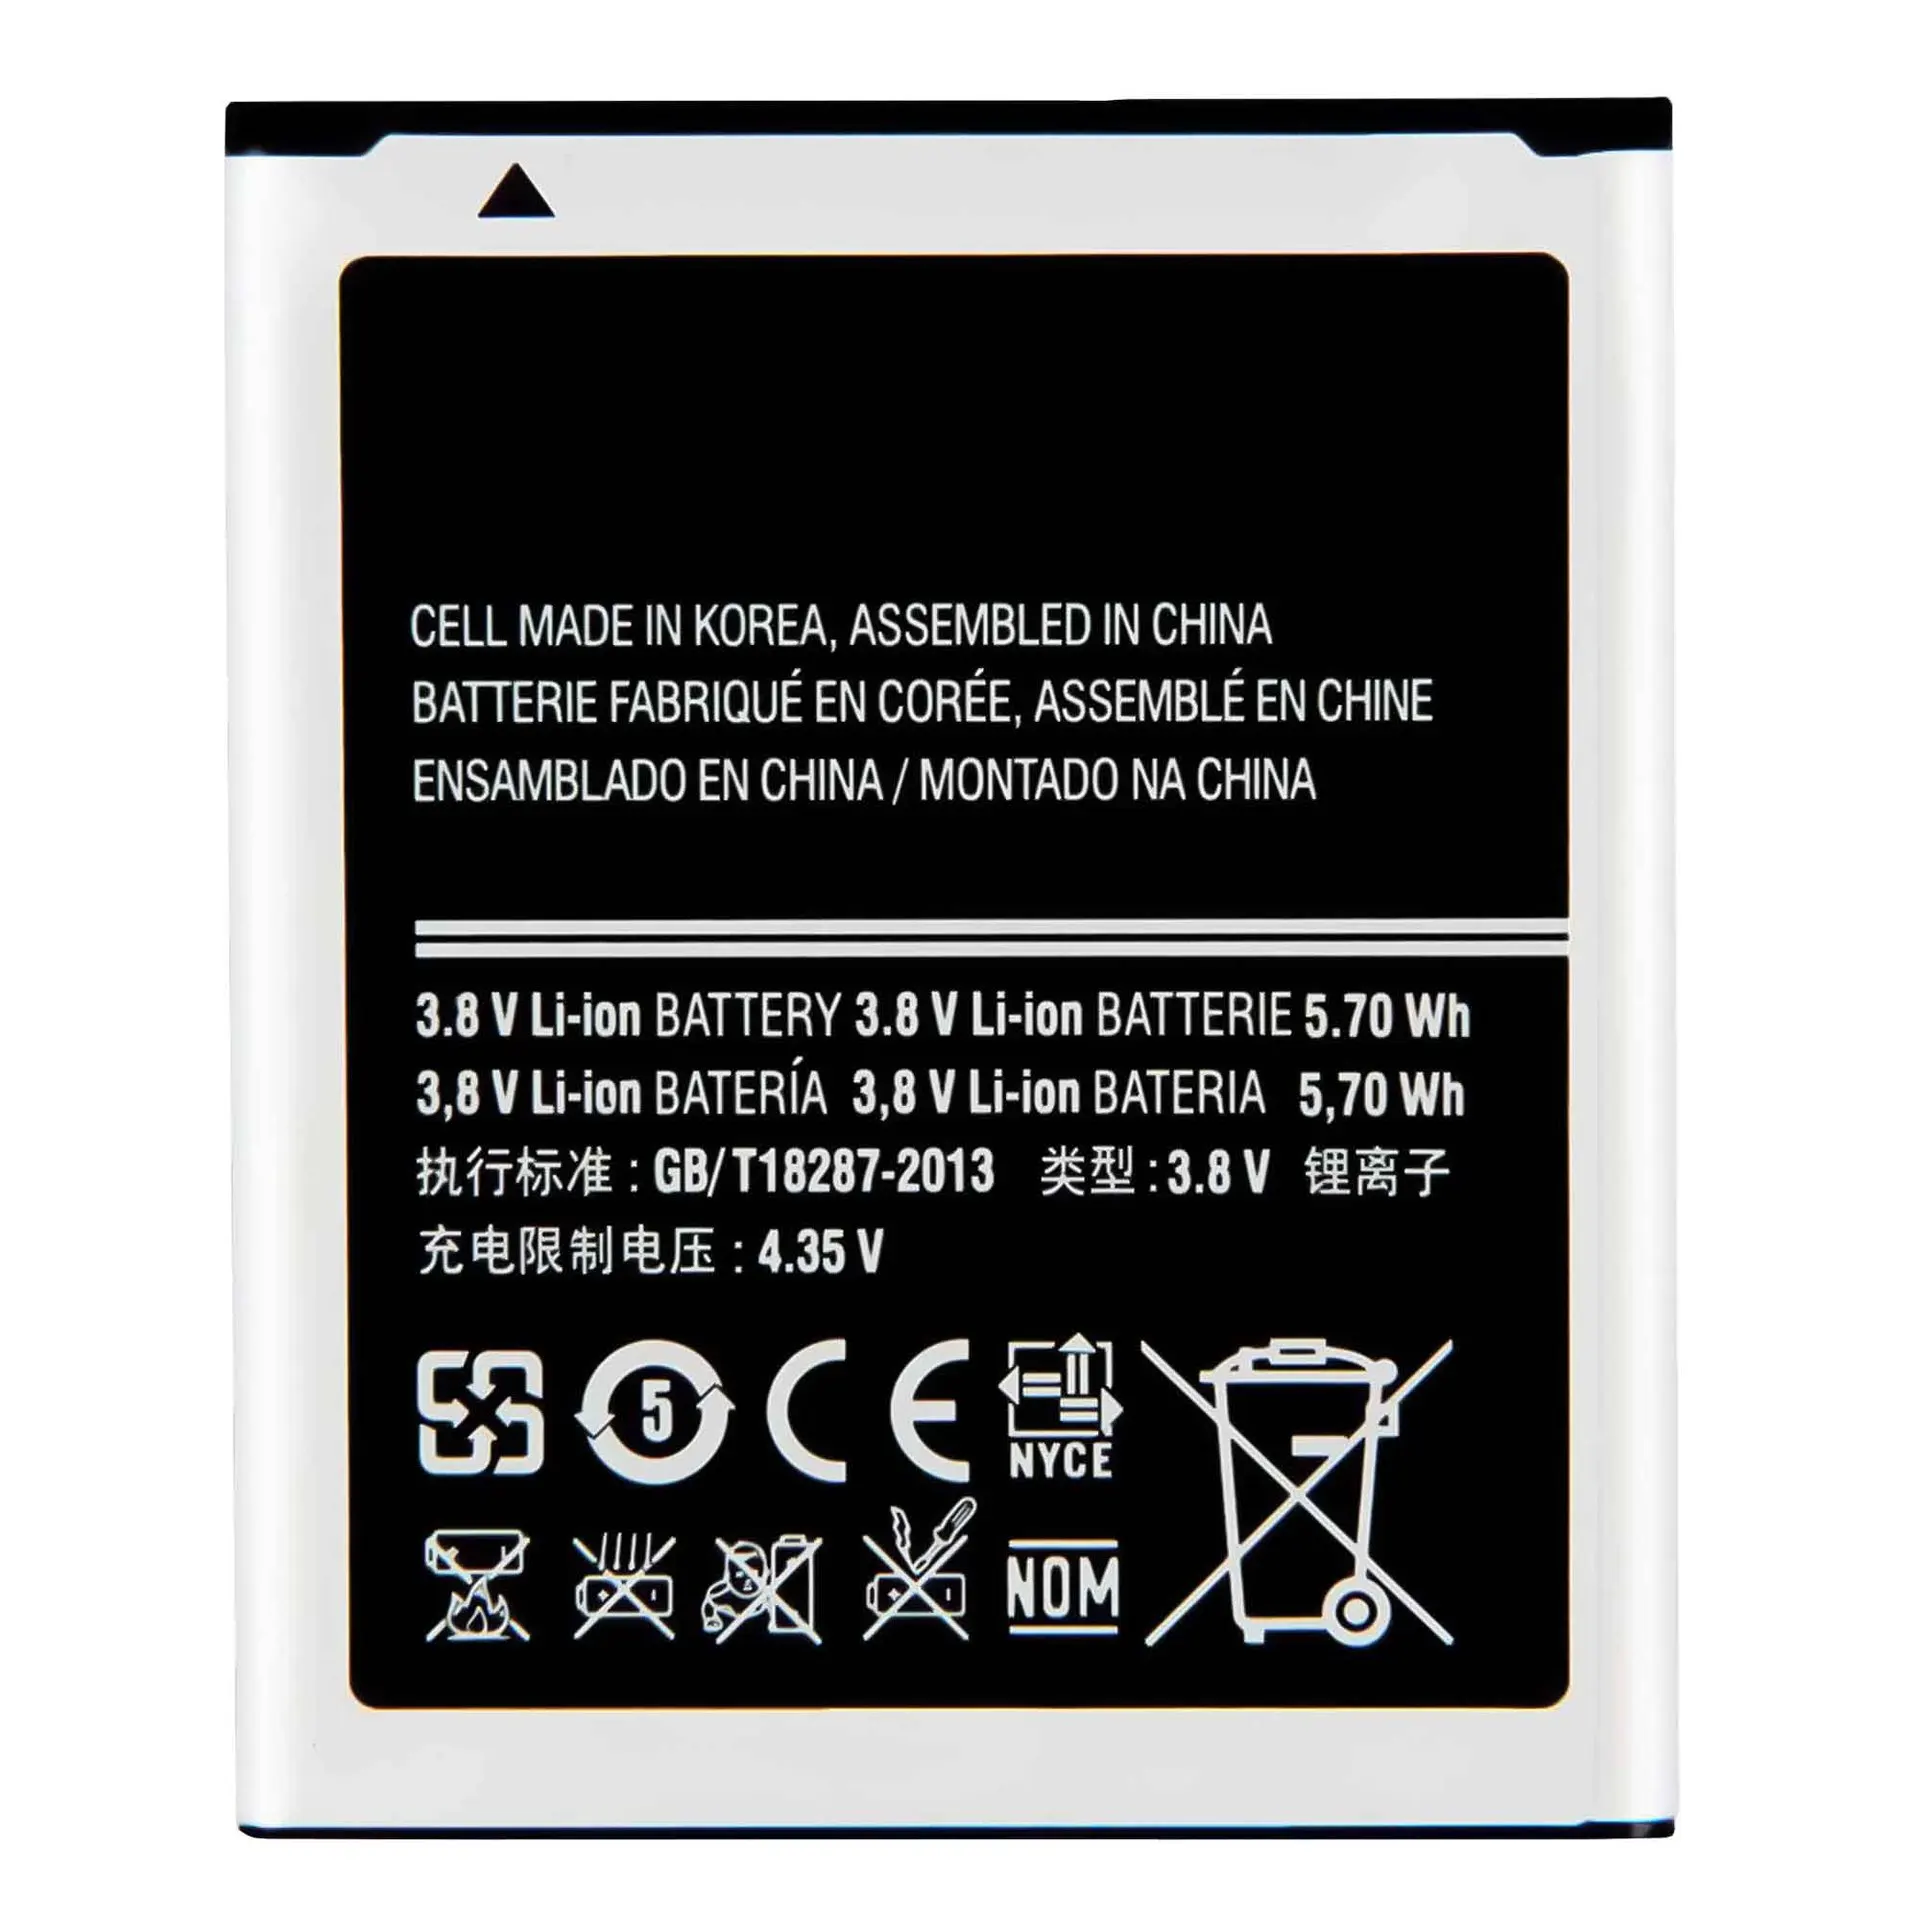 EB425161LU Battery For Samsung S7560 S7566 S7568 S7572 S7580 i8190 I739 I8160 S7582 J1MINI Repair Part Original Capacity Phone enlarge